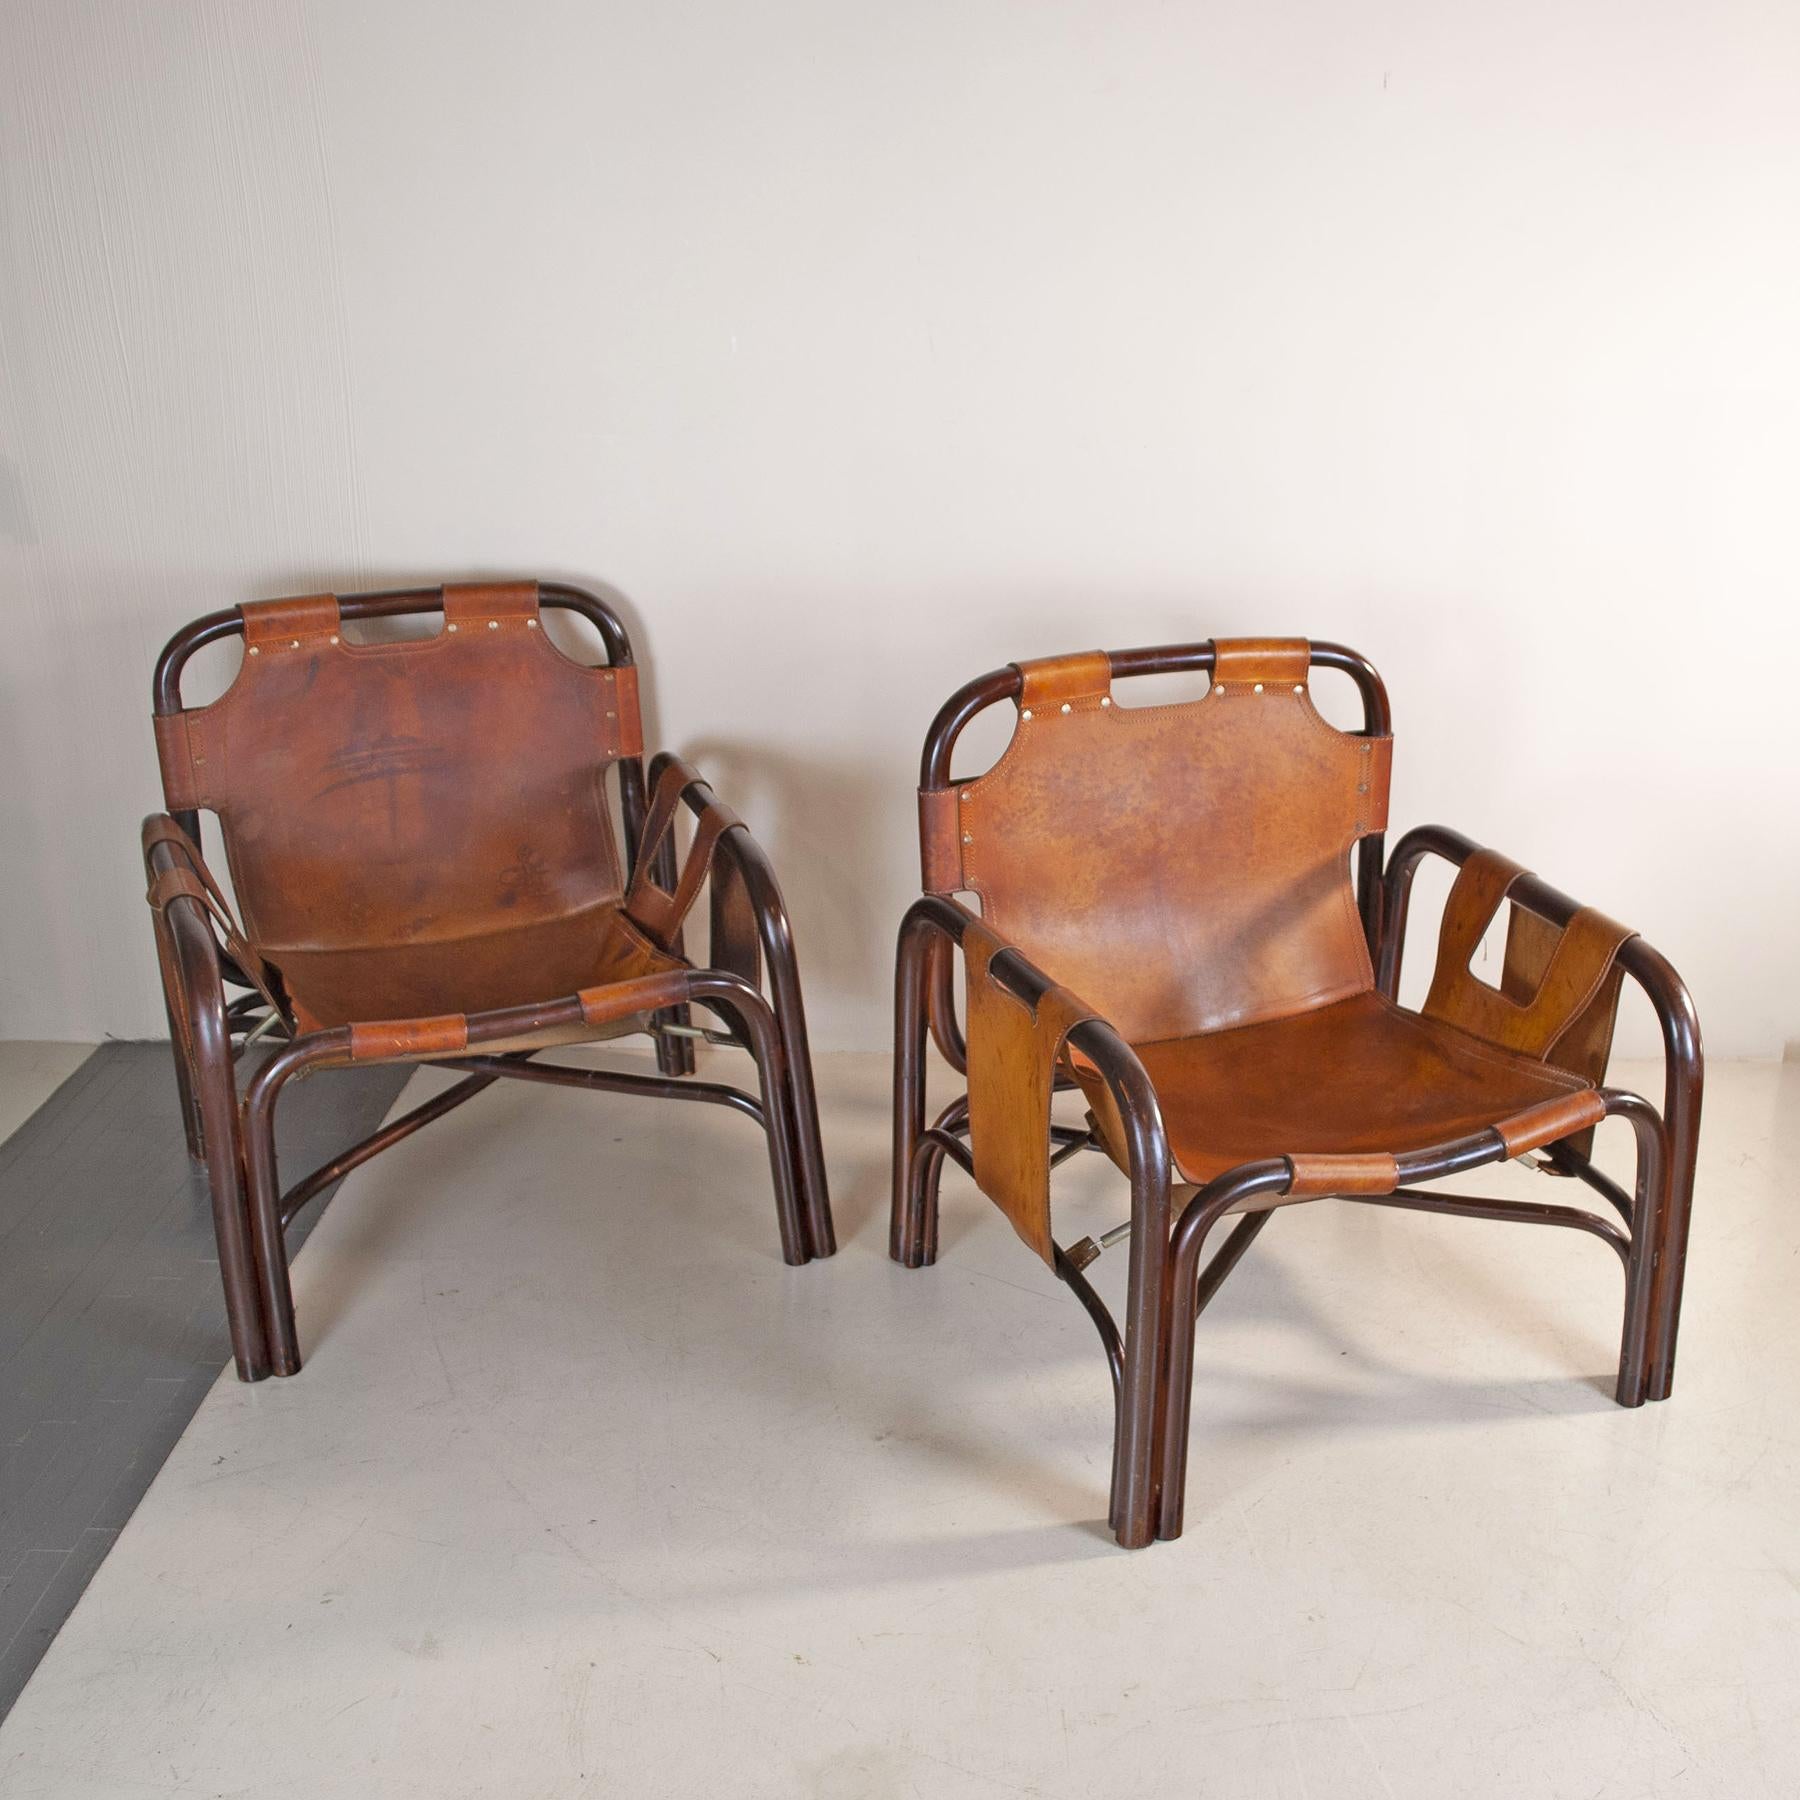 Satz von zwei Sesseln, entworfen von Tito Agnoli für Bonacina Ende der 1960er Jahre. Gestell aus Bambus und Polsterung aus cognacfarbenem Leder. Einige Flecken auf dem Leder